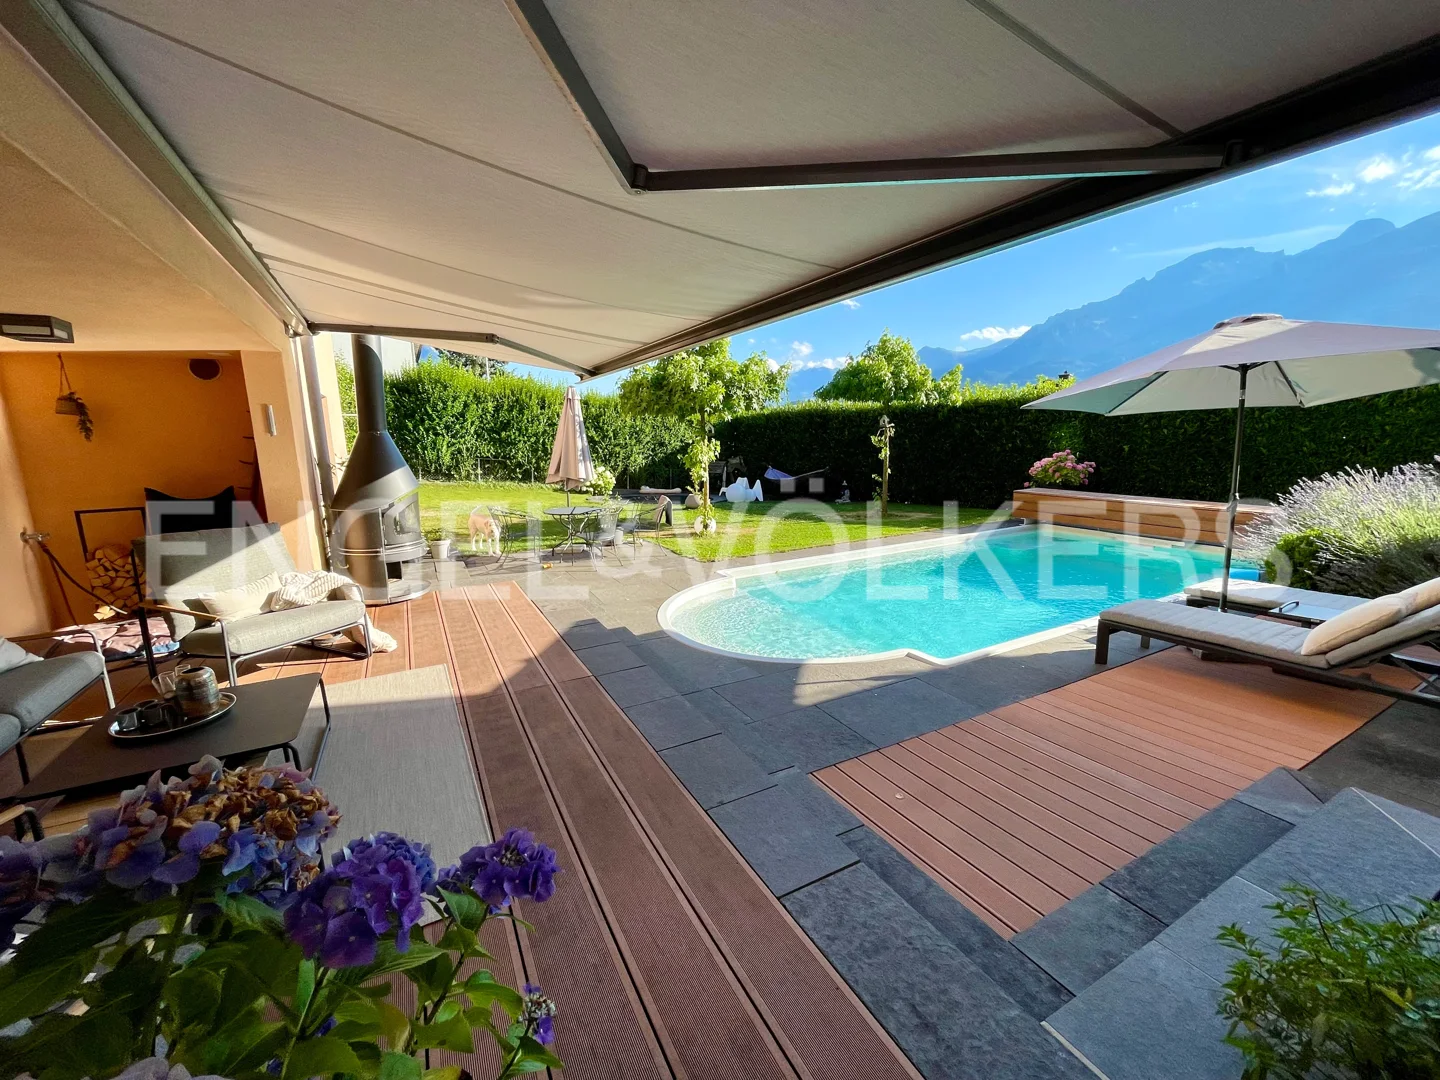 VERKAUFT! Premium-Einfamilienhaus mit Pool in Vaduz